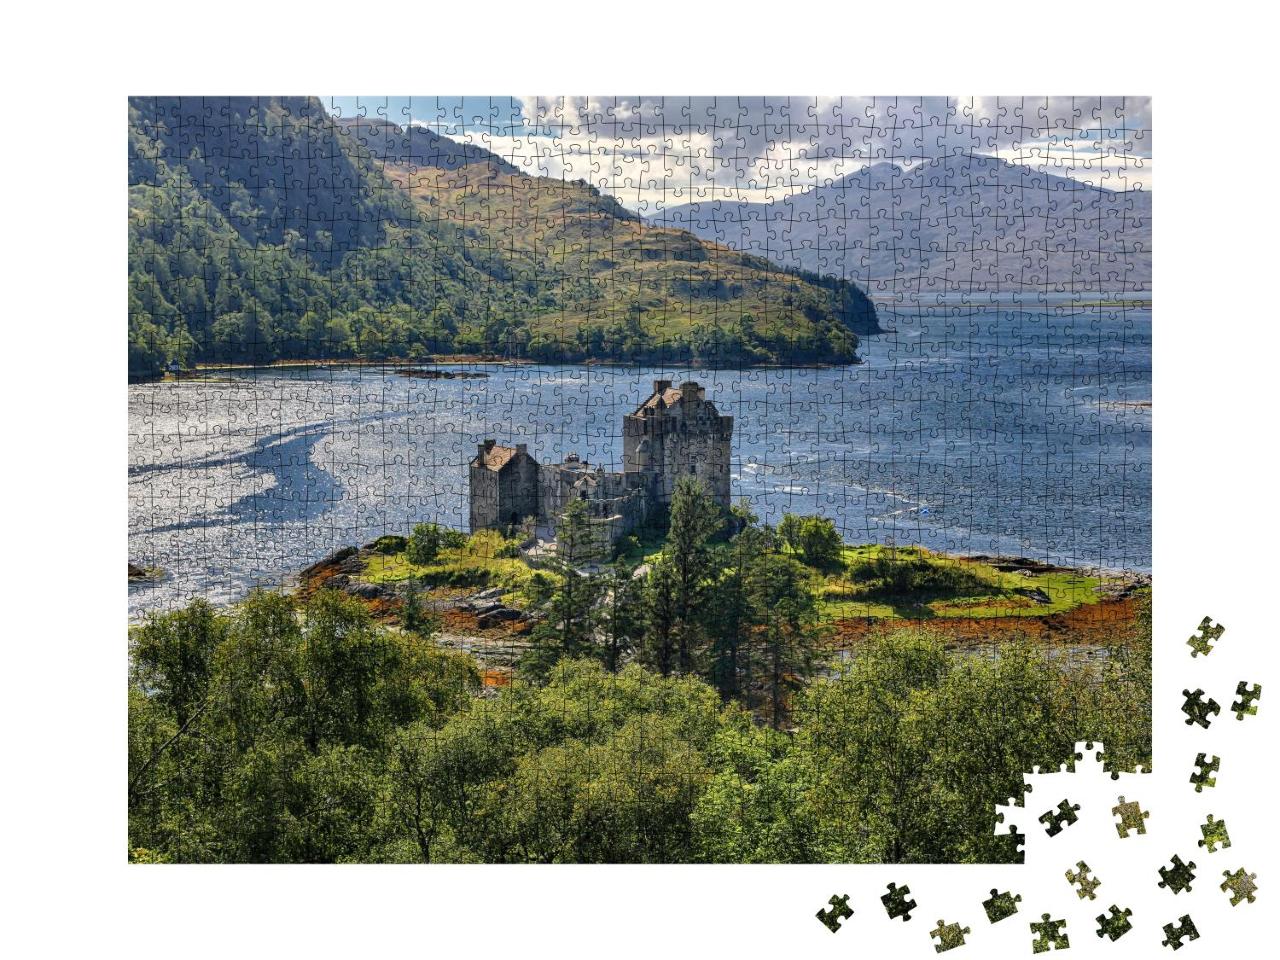 Puzzle 1000 Teile „Mittelalterliche Festung Eilean Donan Castle, Highlands, Schottland“